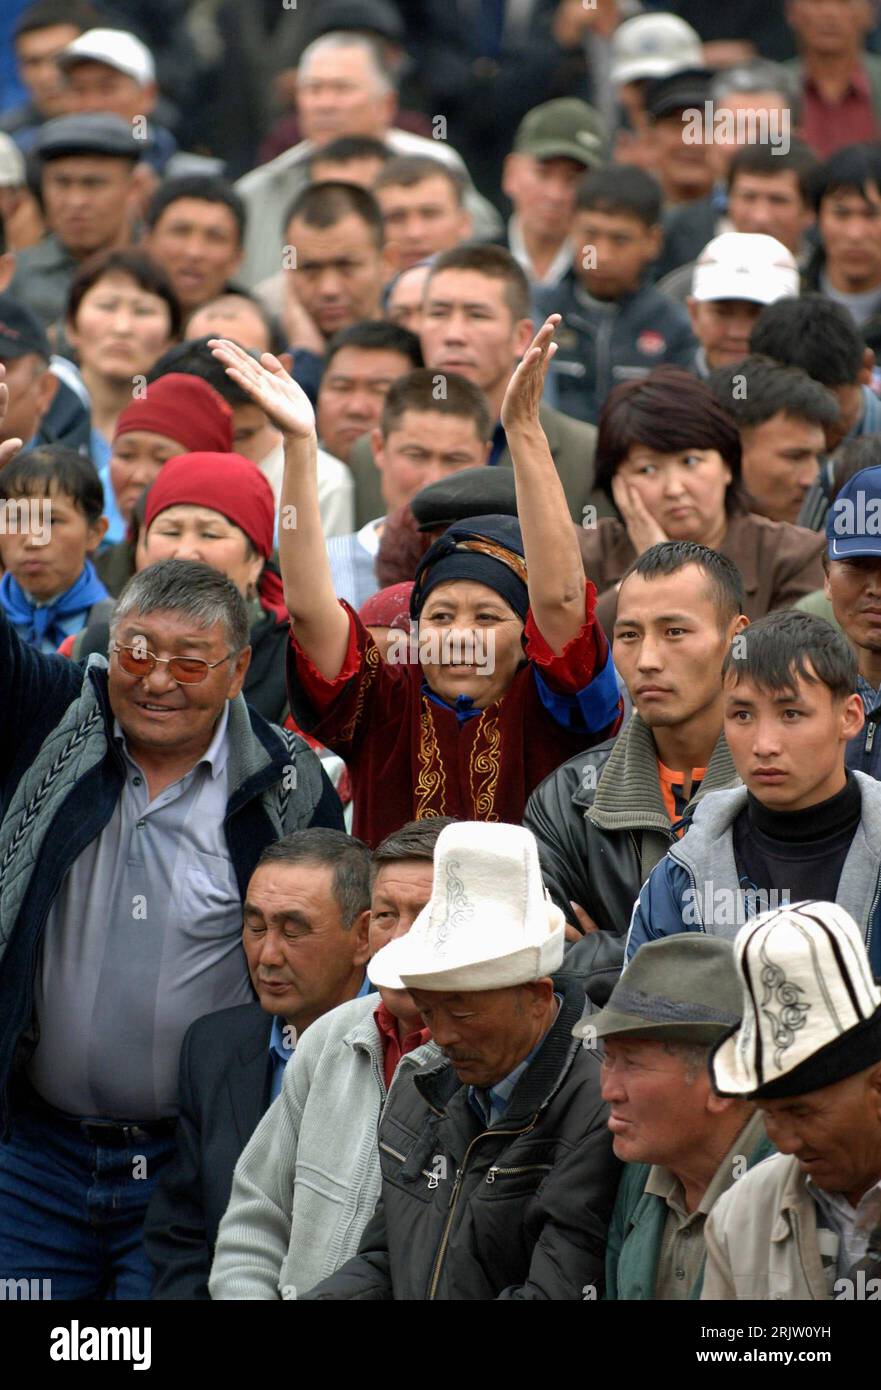 Bildnummer: 51809895  Datum: 17.04.2007  Copyright: imago/Xinhua Oppositionsanhänger demonstrieren in Bischkek - PUBLICATIONxNOTxINxCHN, Personen; 2007, Bischkek, Demo, Demonstranten, Opposition, Anhänger, Protest, Kirgise, Kirgisen; , hoch, Kbdig, Totale, Kirgistan,  ,o0 Politik Stock Photo